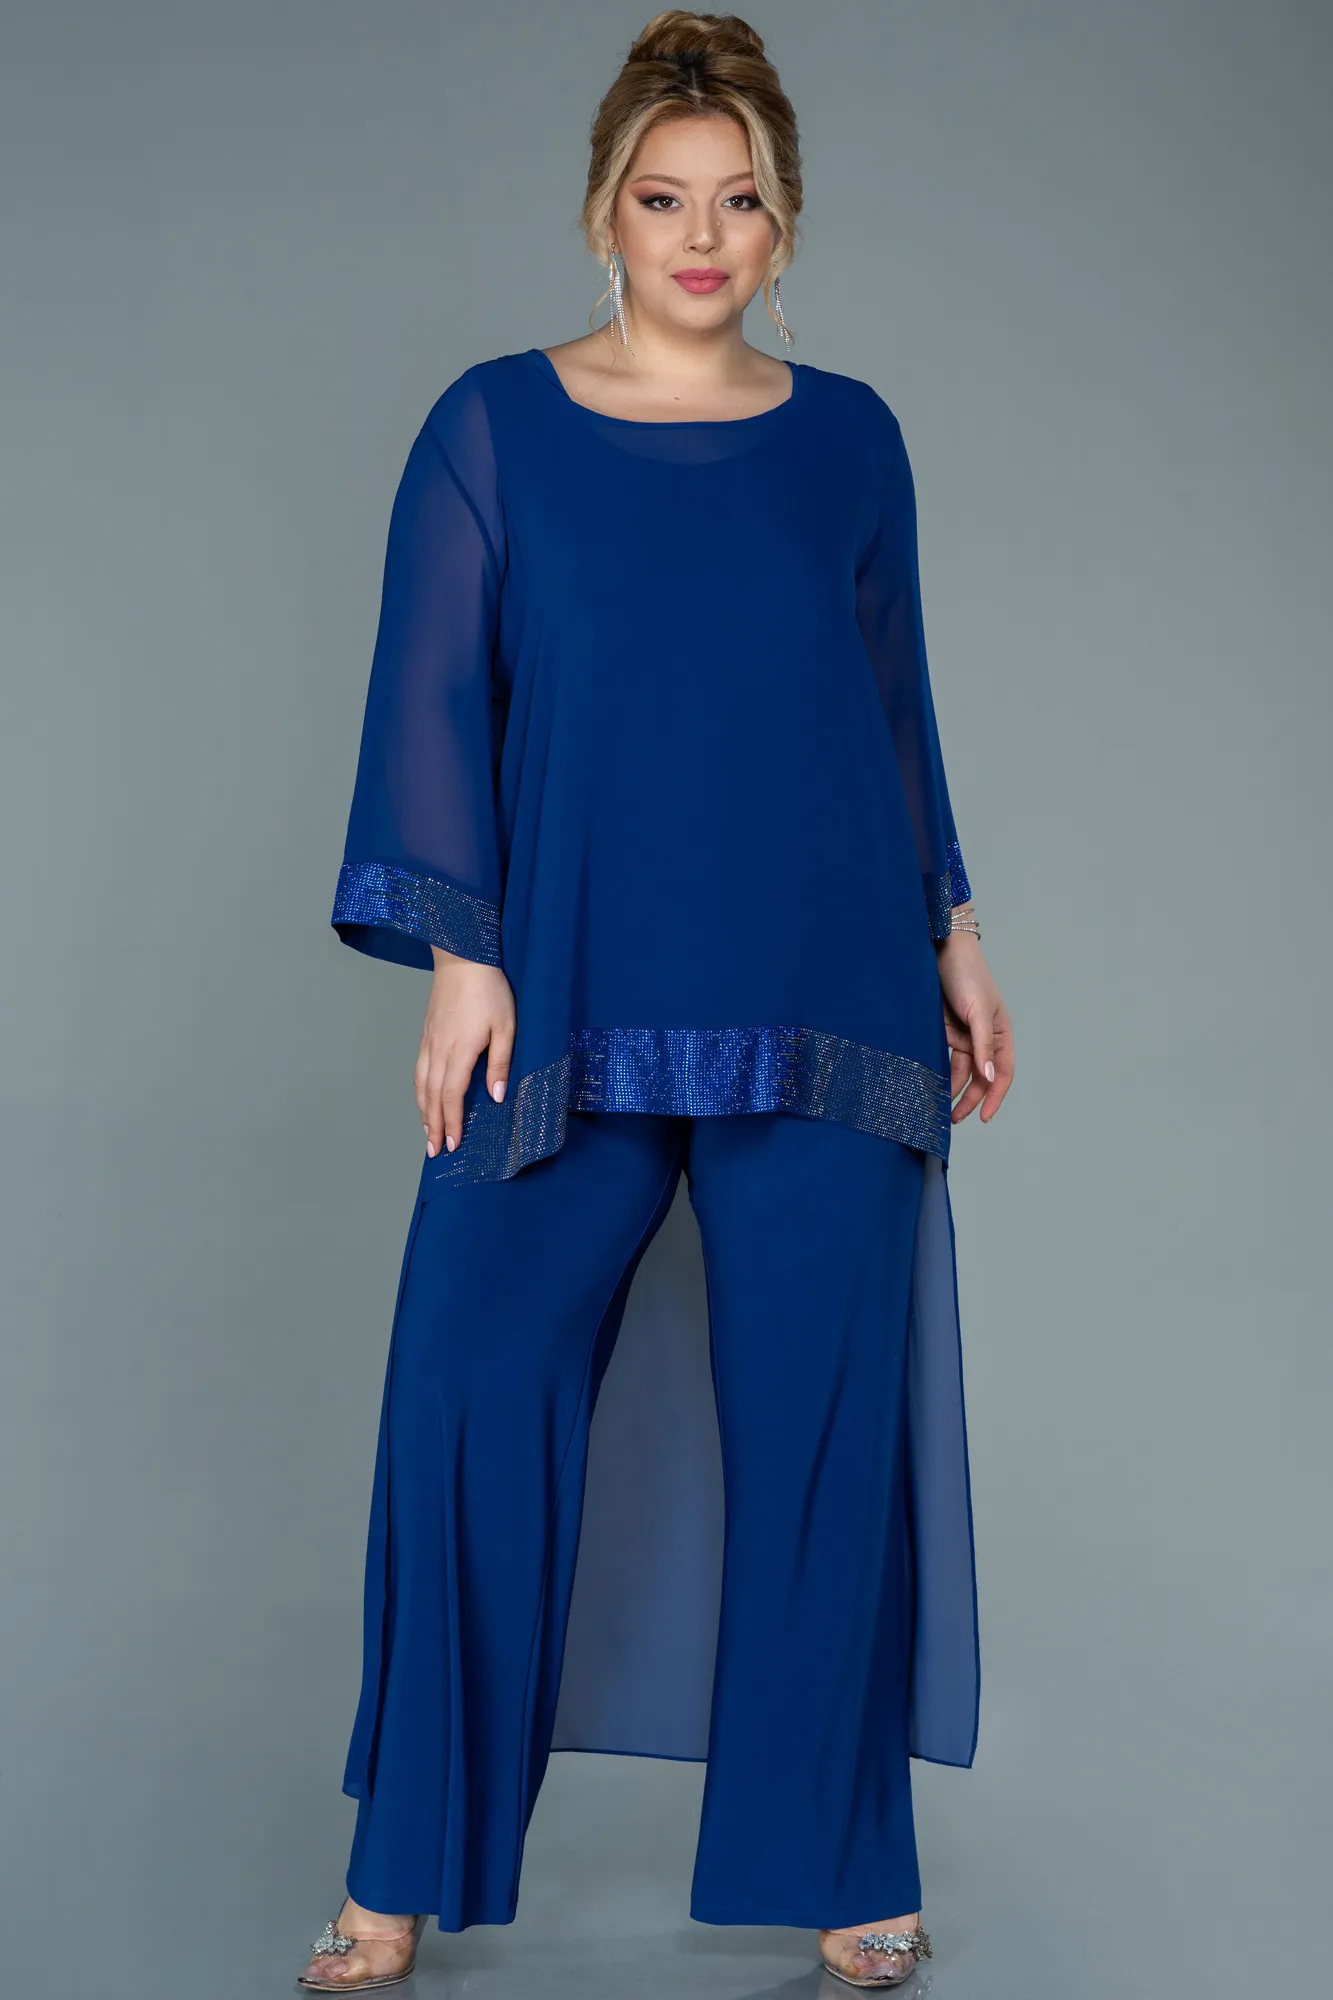 Sax Blue-Long Chiffon Evening Dress ABT083